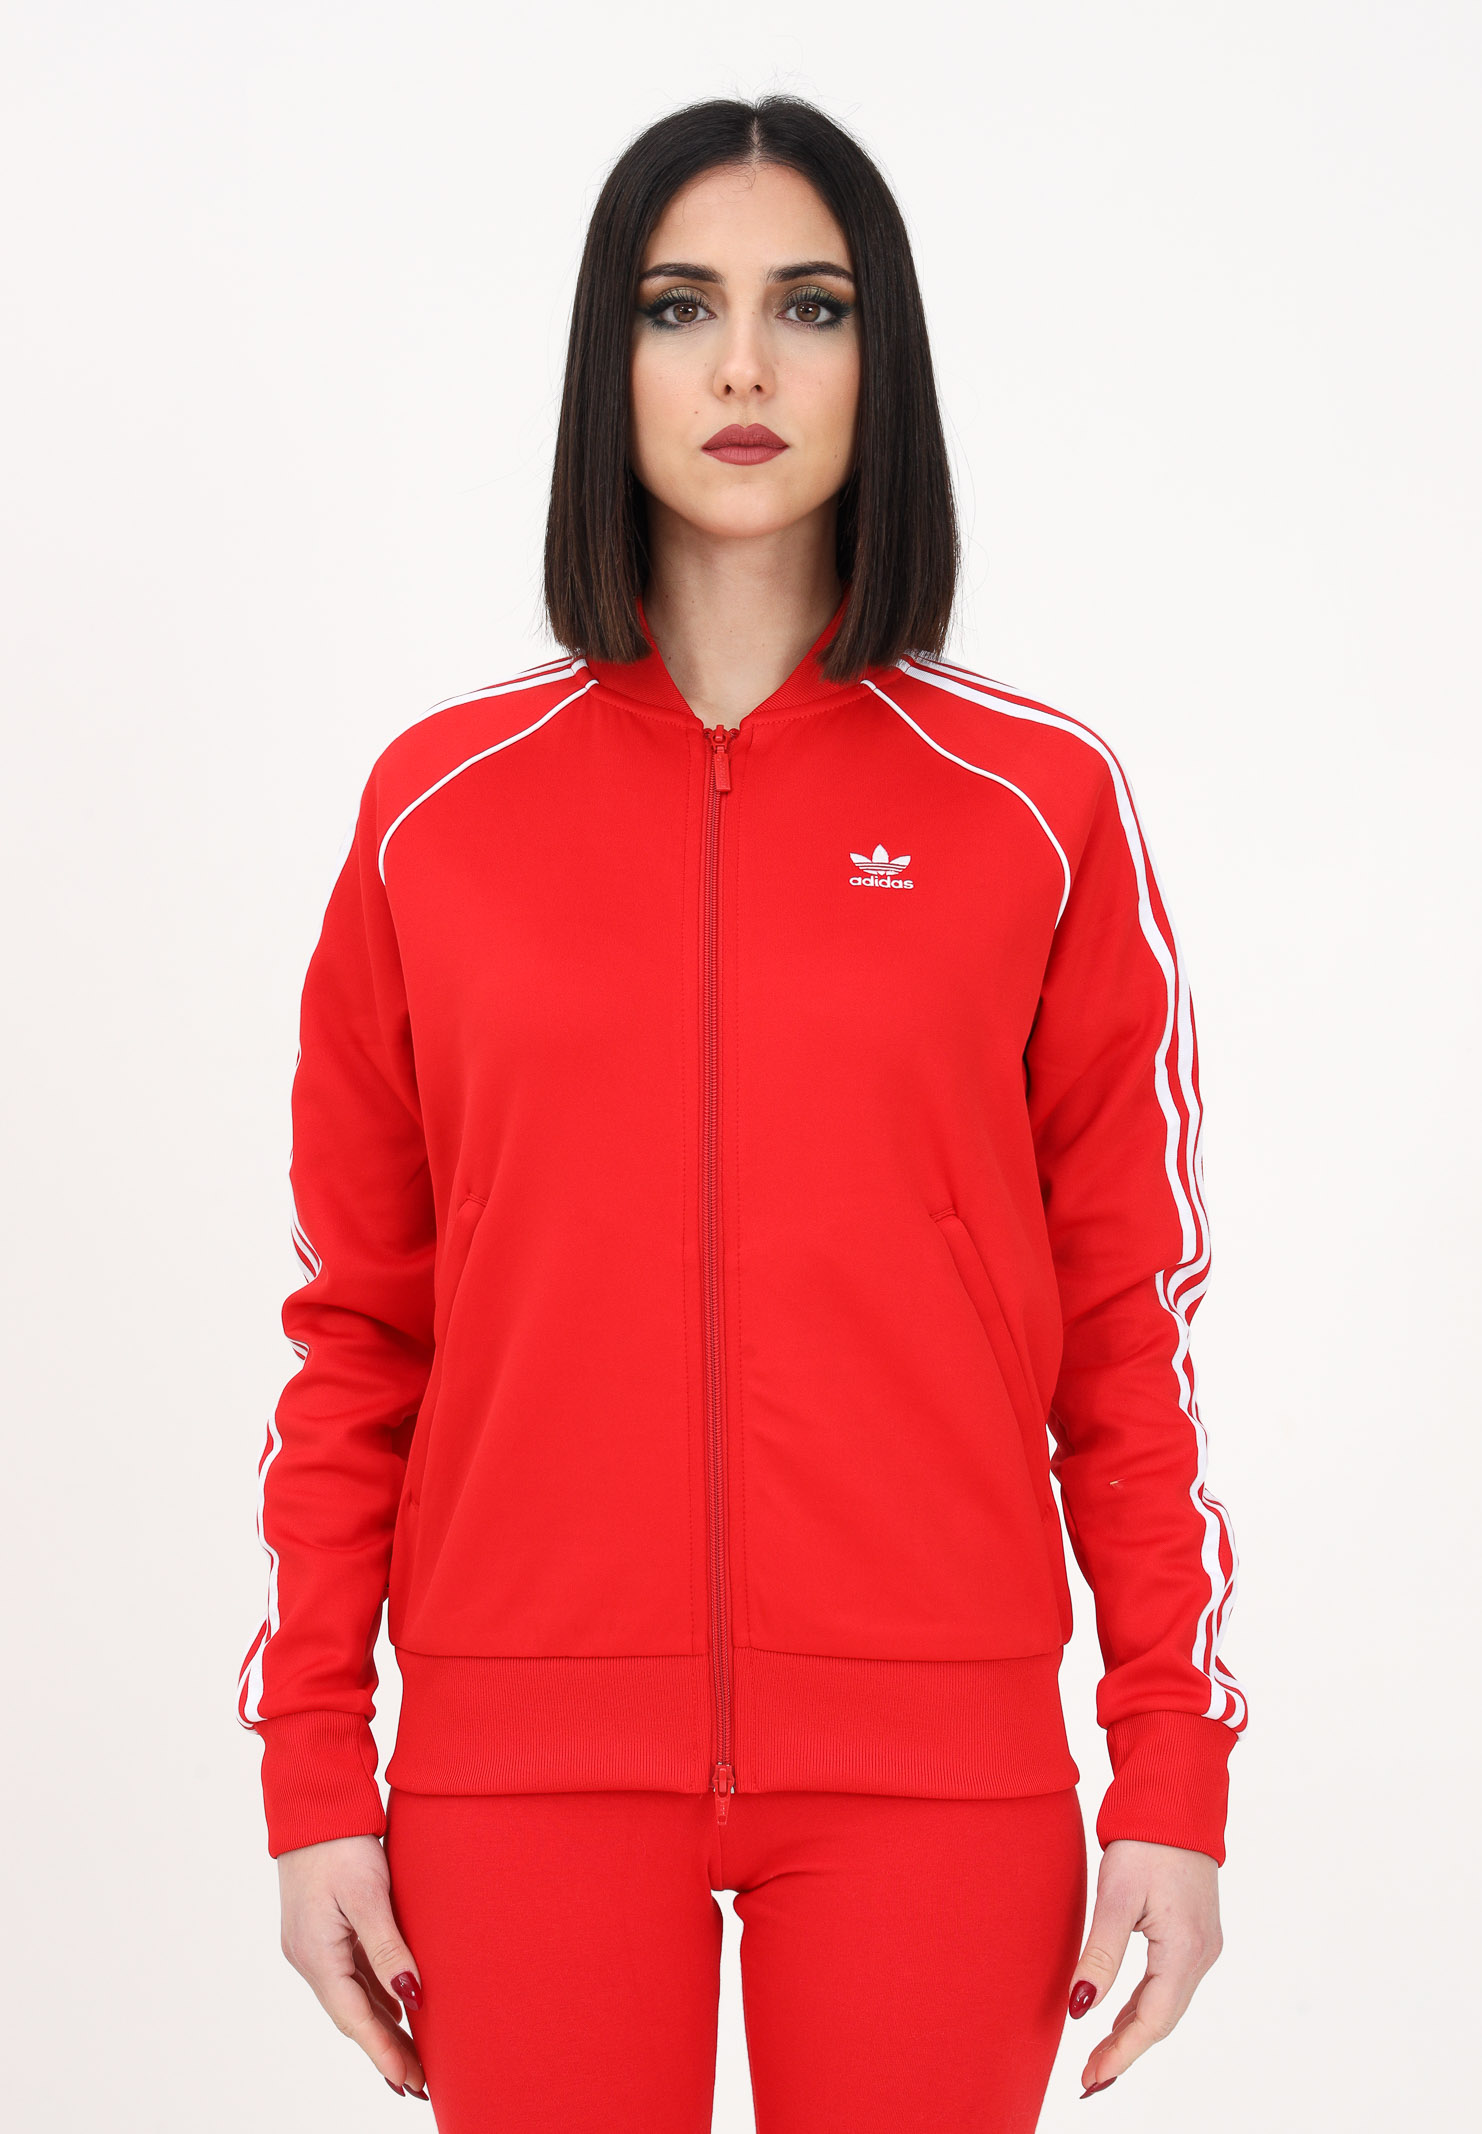 SST women's red zip sweatshirt ADIDAS ORIGINALS | IB5913.